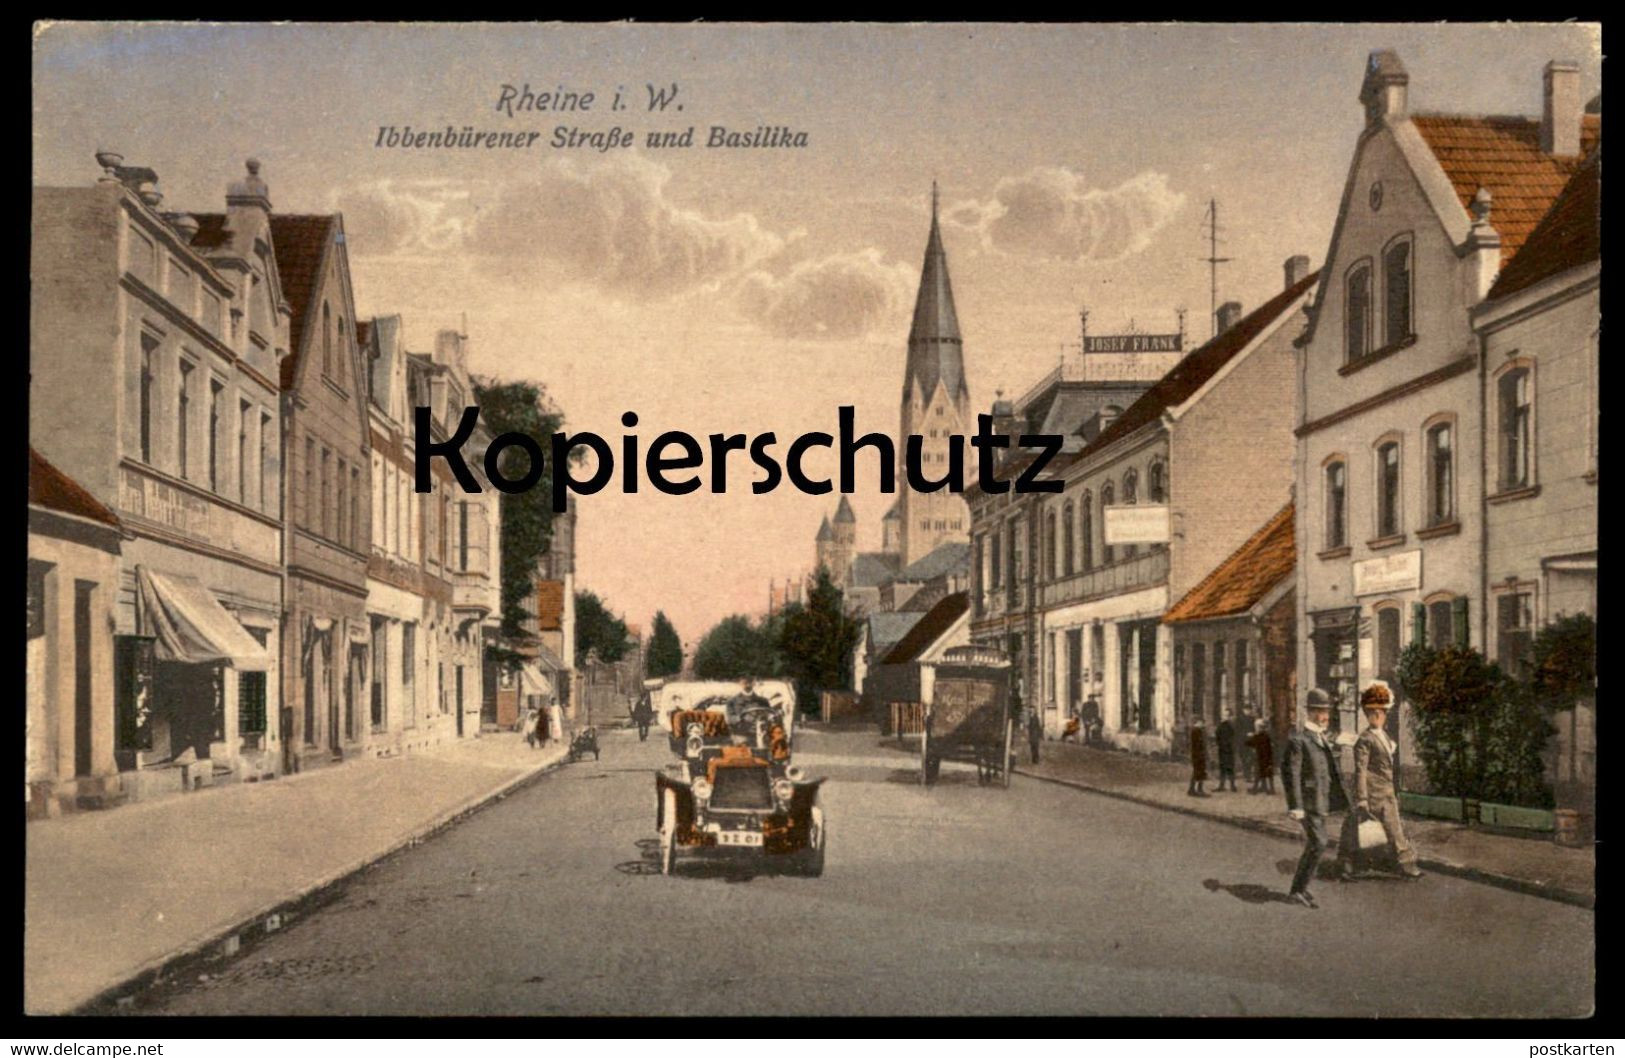 ALTE POSTKARTE RHEINE IN WESTFALEN IBBENBÜRENER STRASSE UND BASILIKA AUTO KUTSCHE JOSEF FRANK Ansichtskarte AK Postcard - Rheine